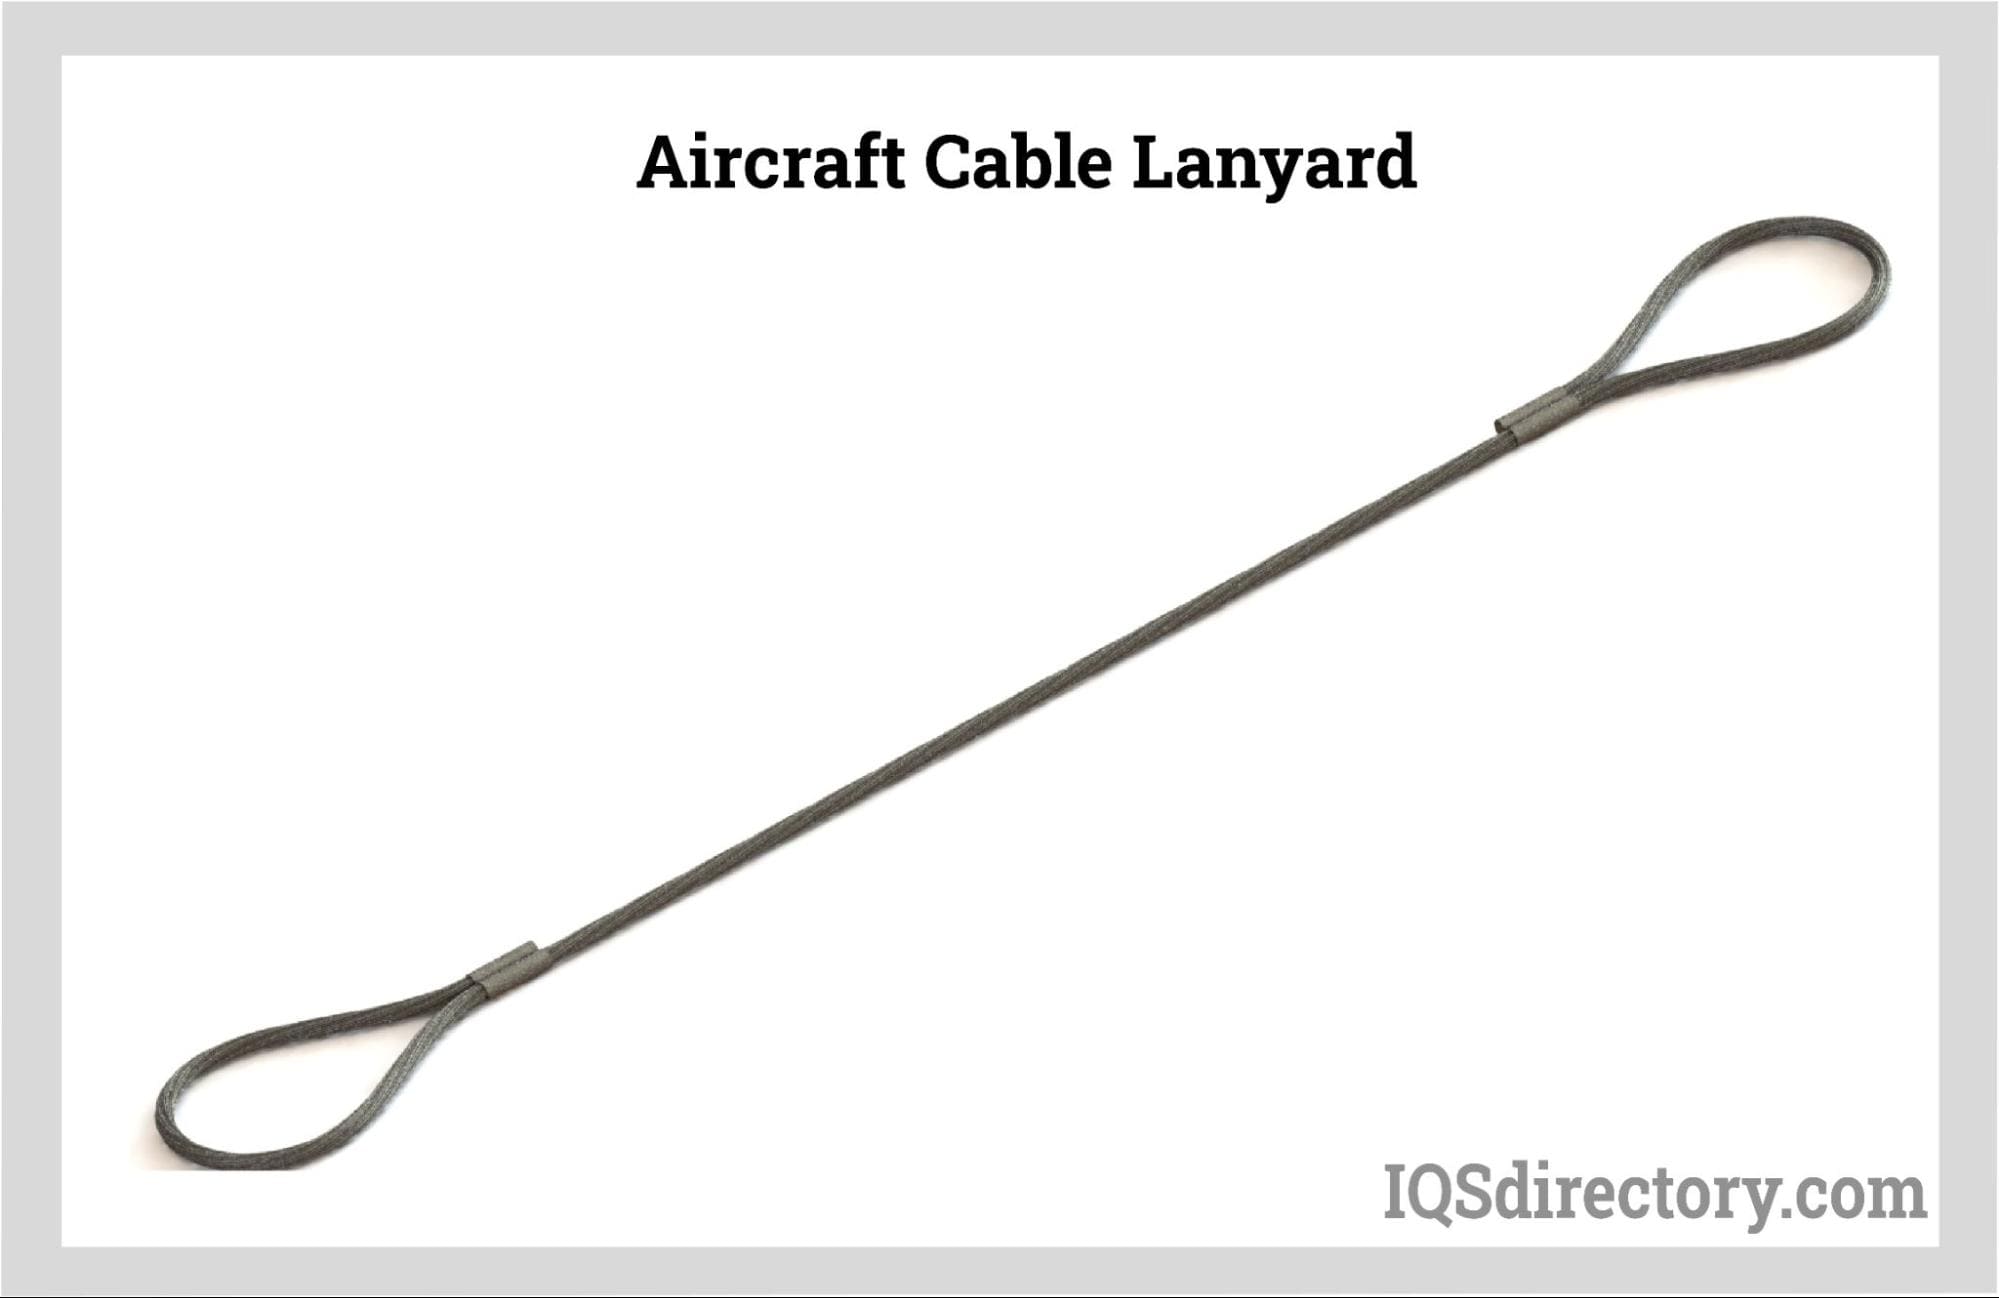 Aircraft Cable Lanyard